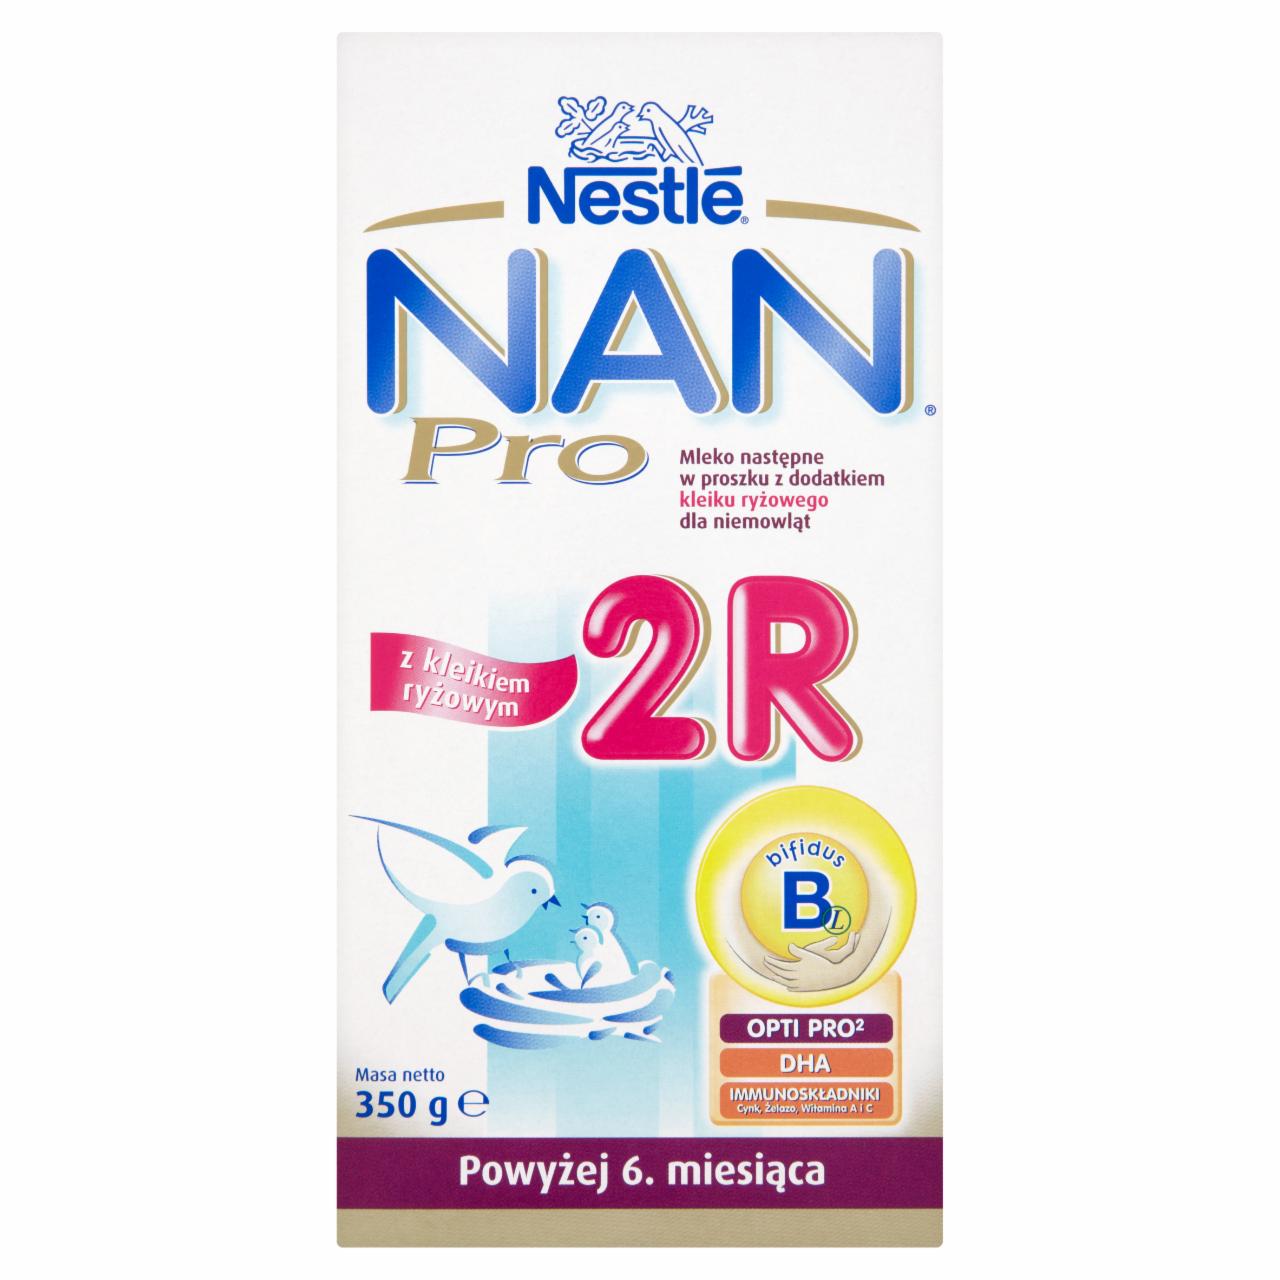 Zdjęcia - Nestlé Nan Pro 2R Mleko następne z dodatkiem kleiku ryżowego dla niemowląt powyżej 6. miesiąca 350 g